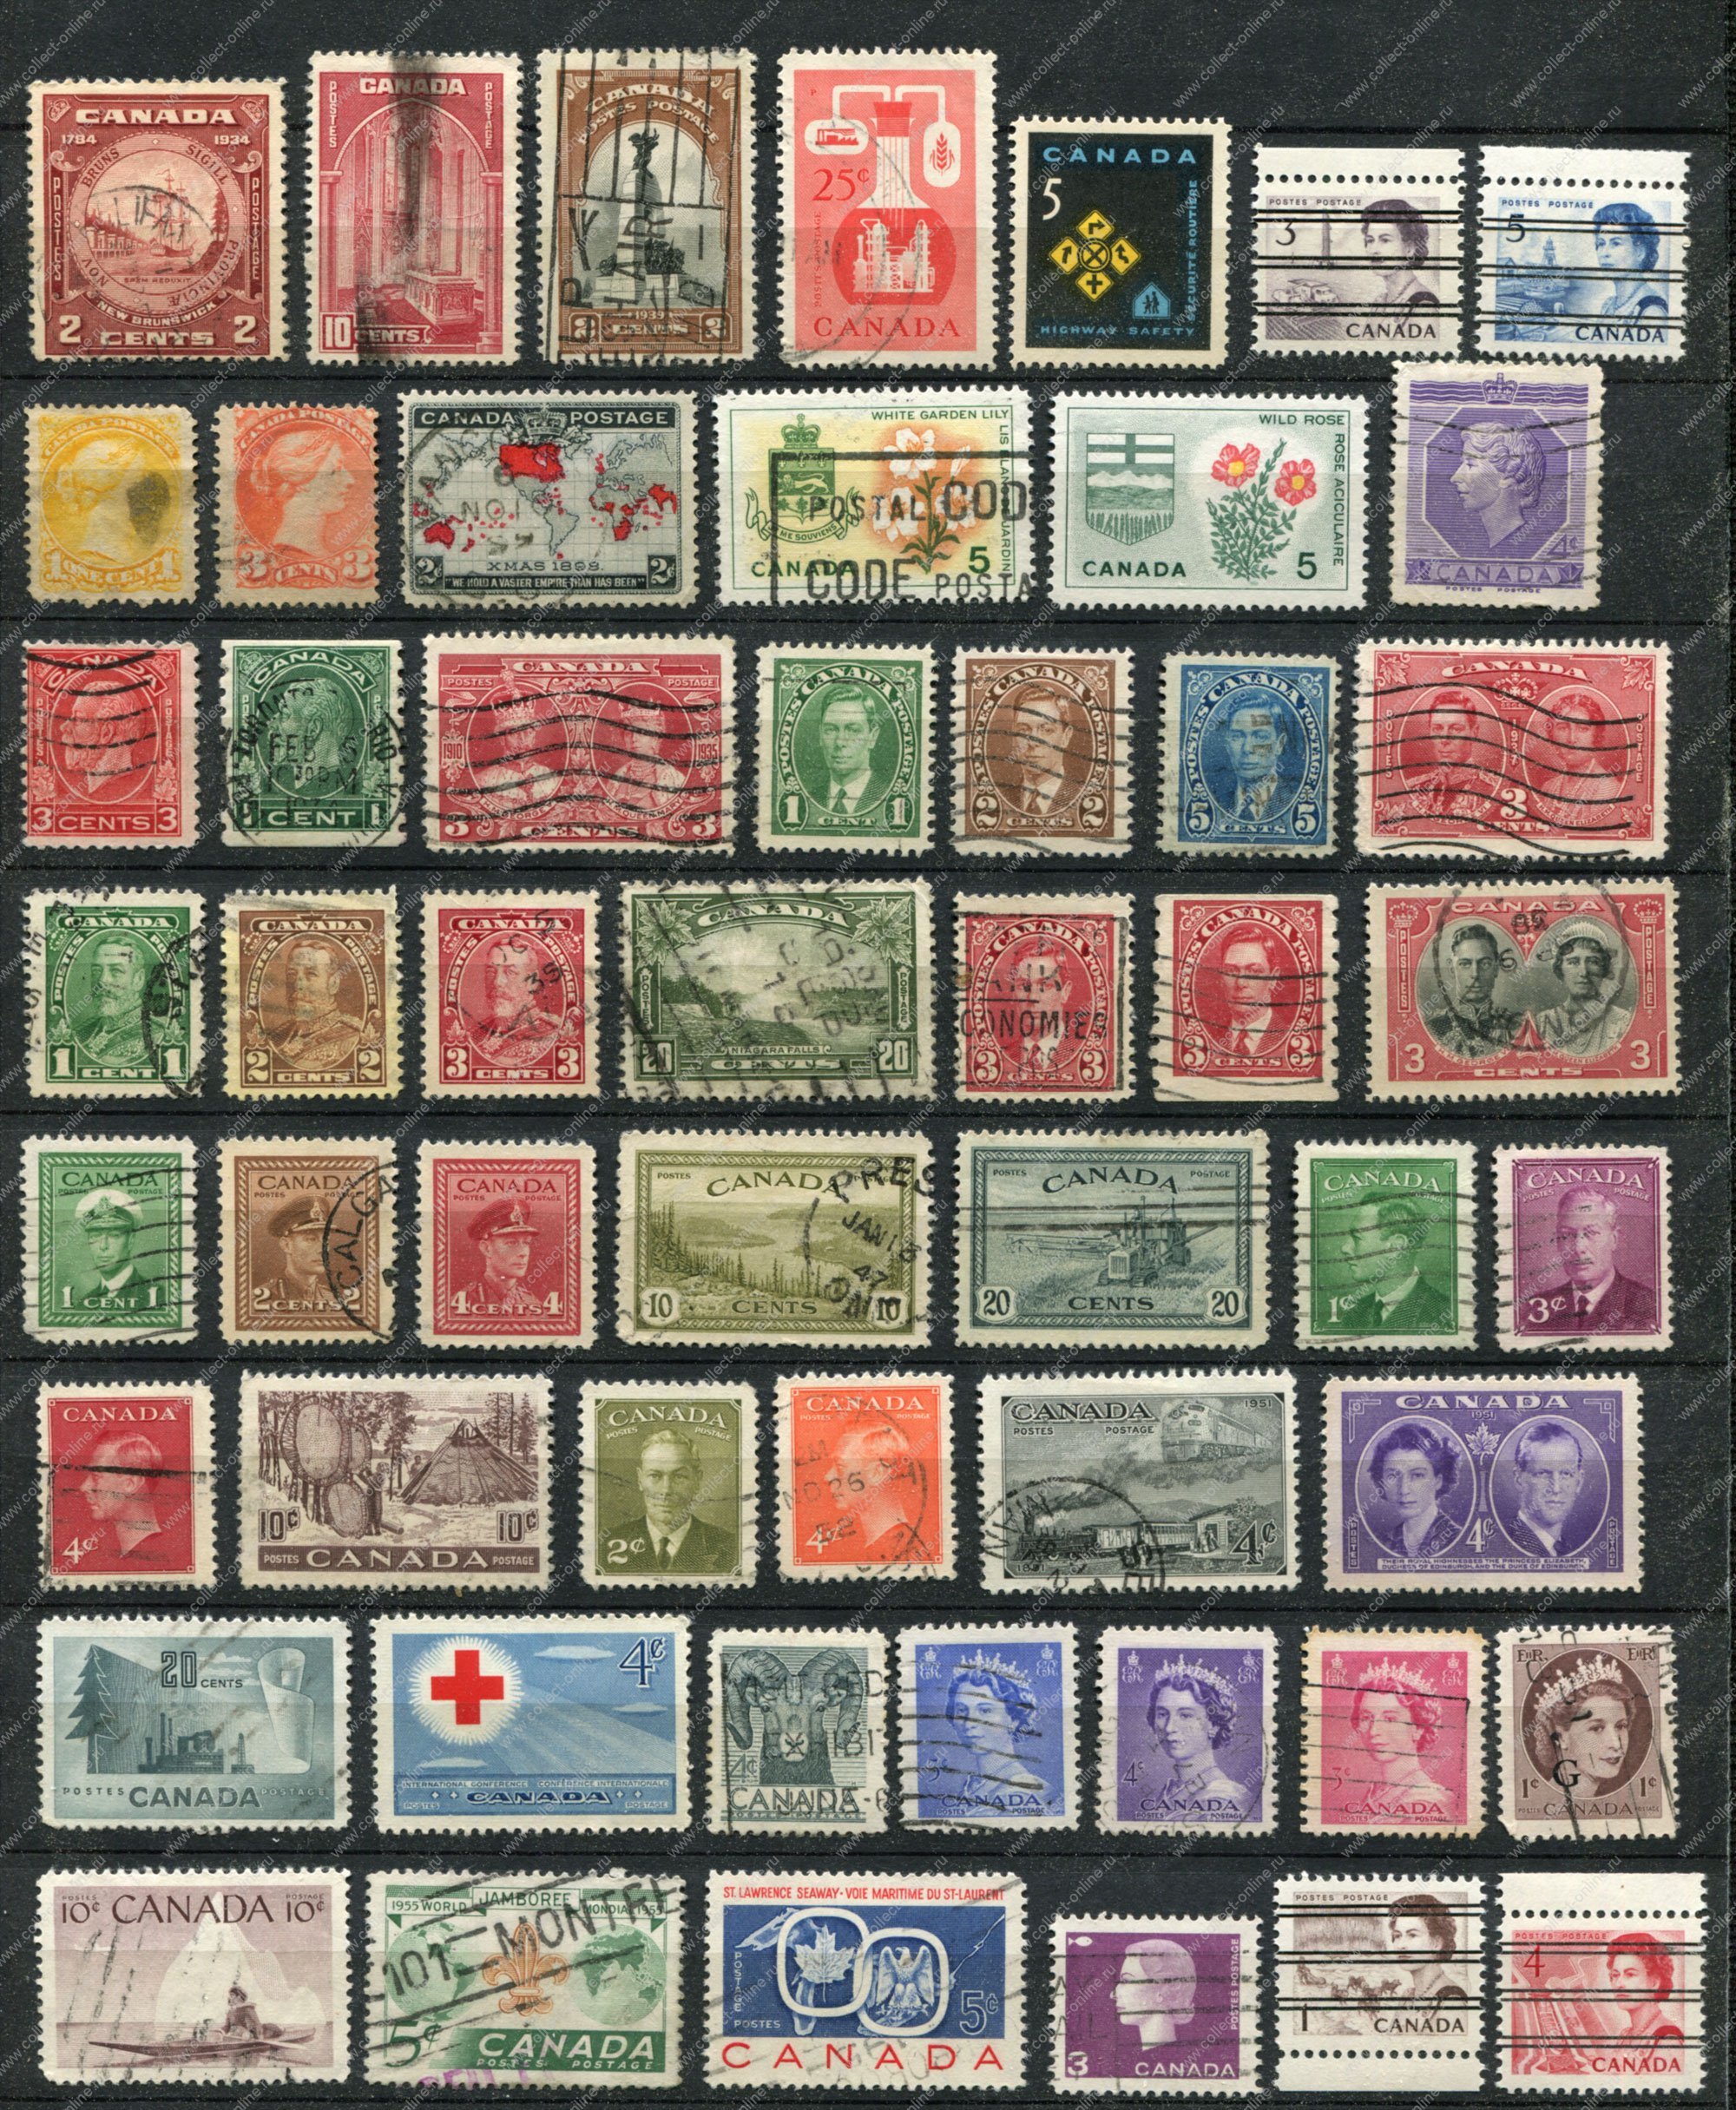 Самые большие коллекции марок